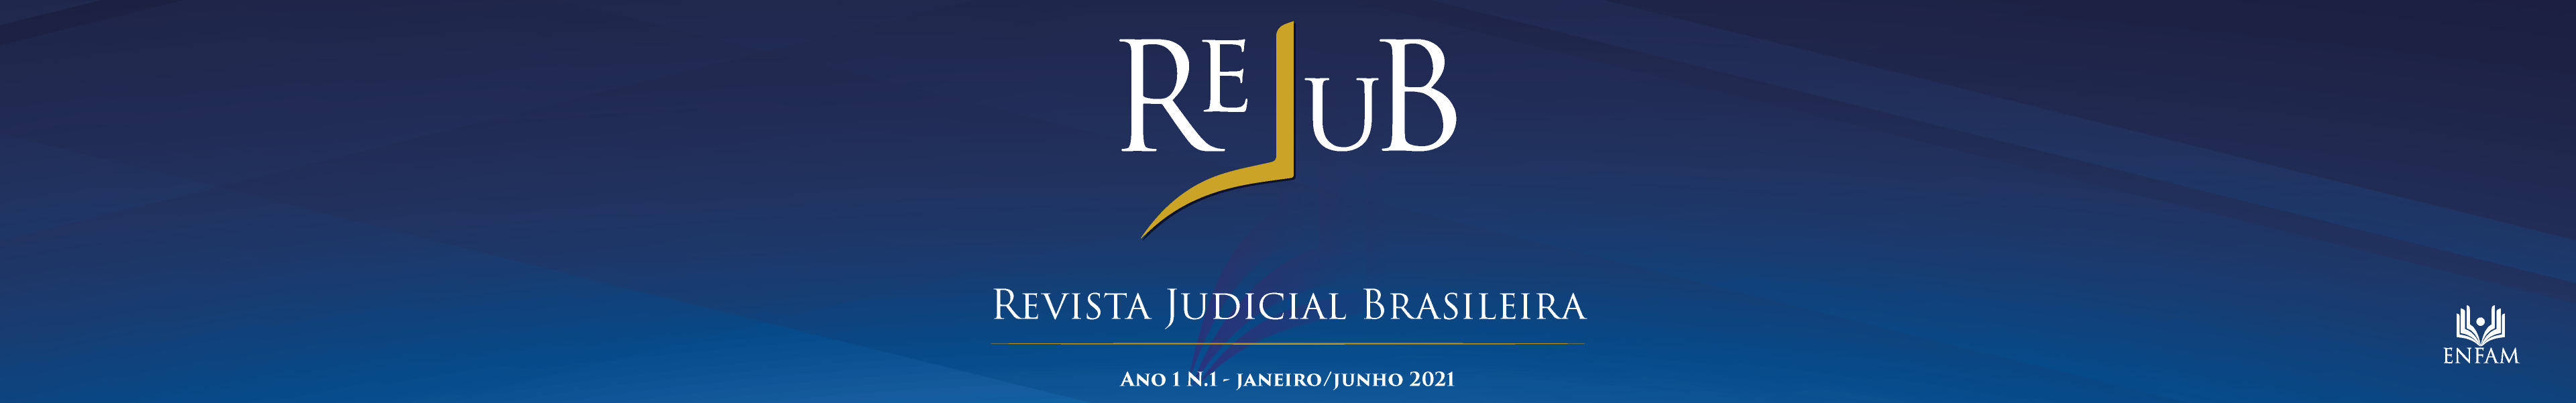 ReJuB - Revista Judicial Brasileira, Ano 1, número 1, de Janeiro a Junho de 2021.